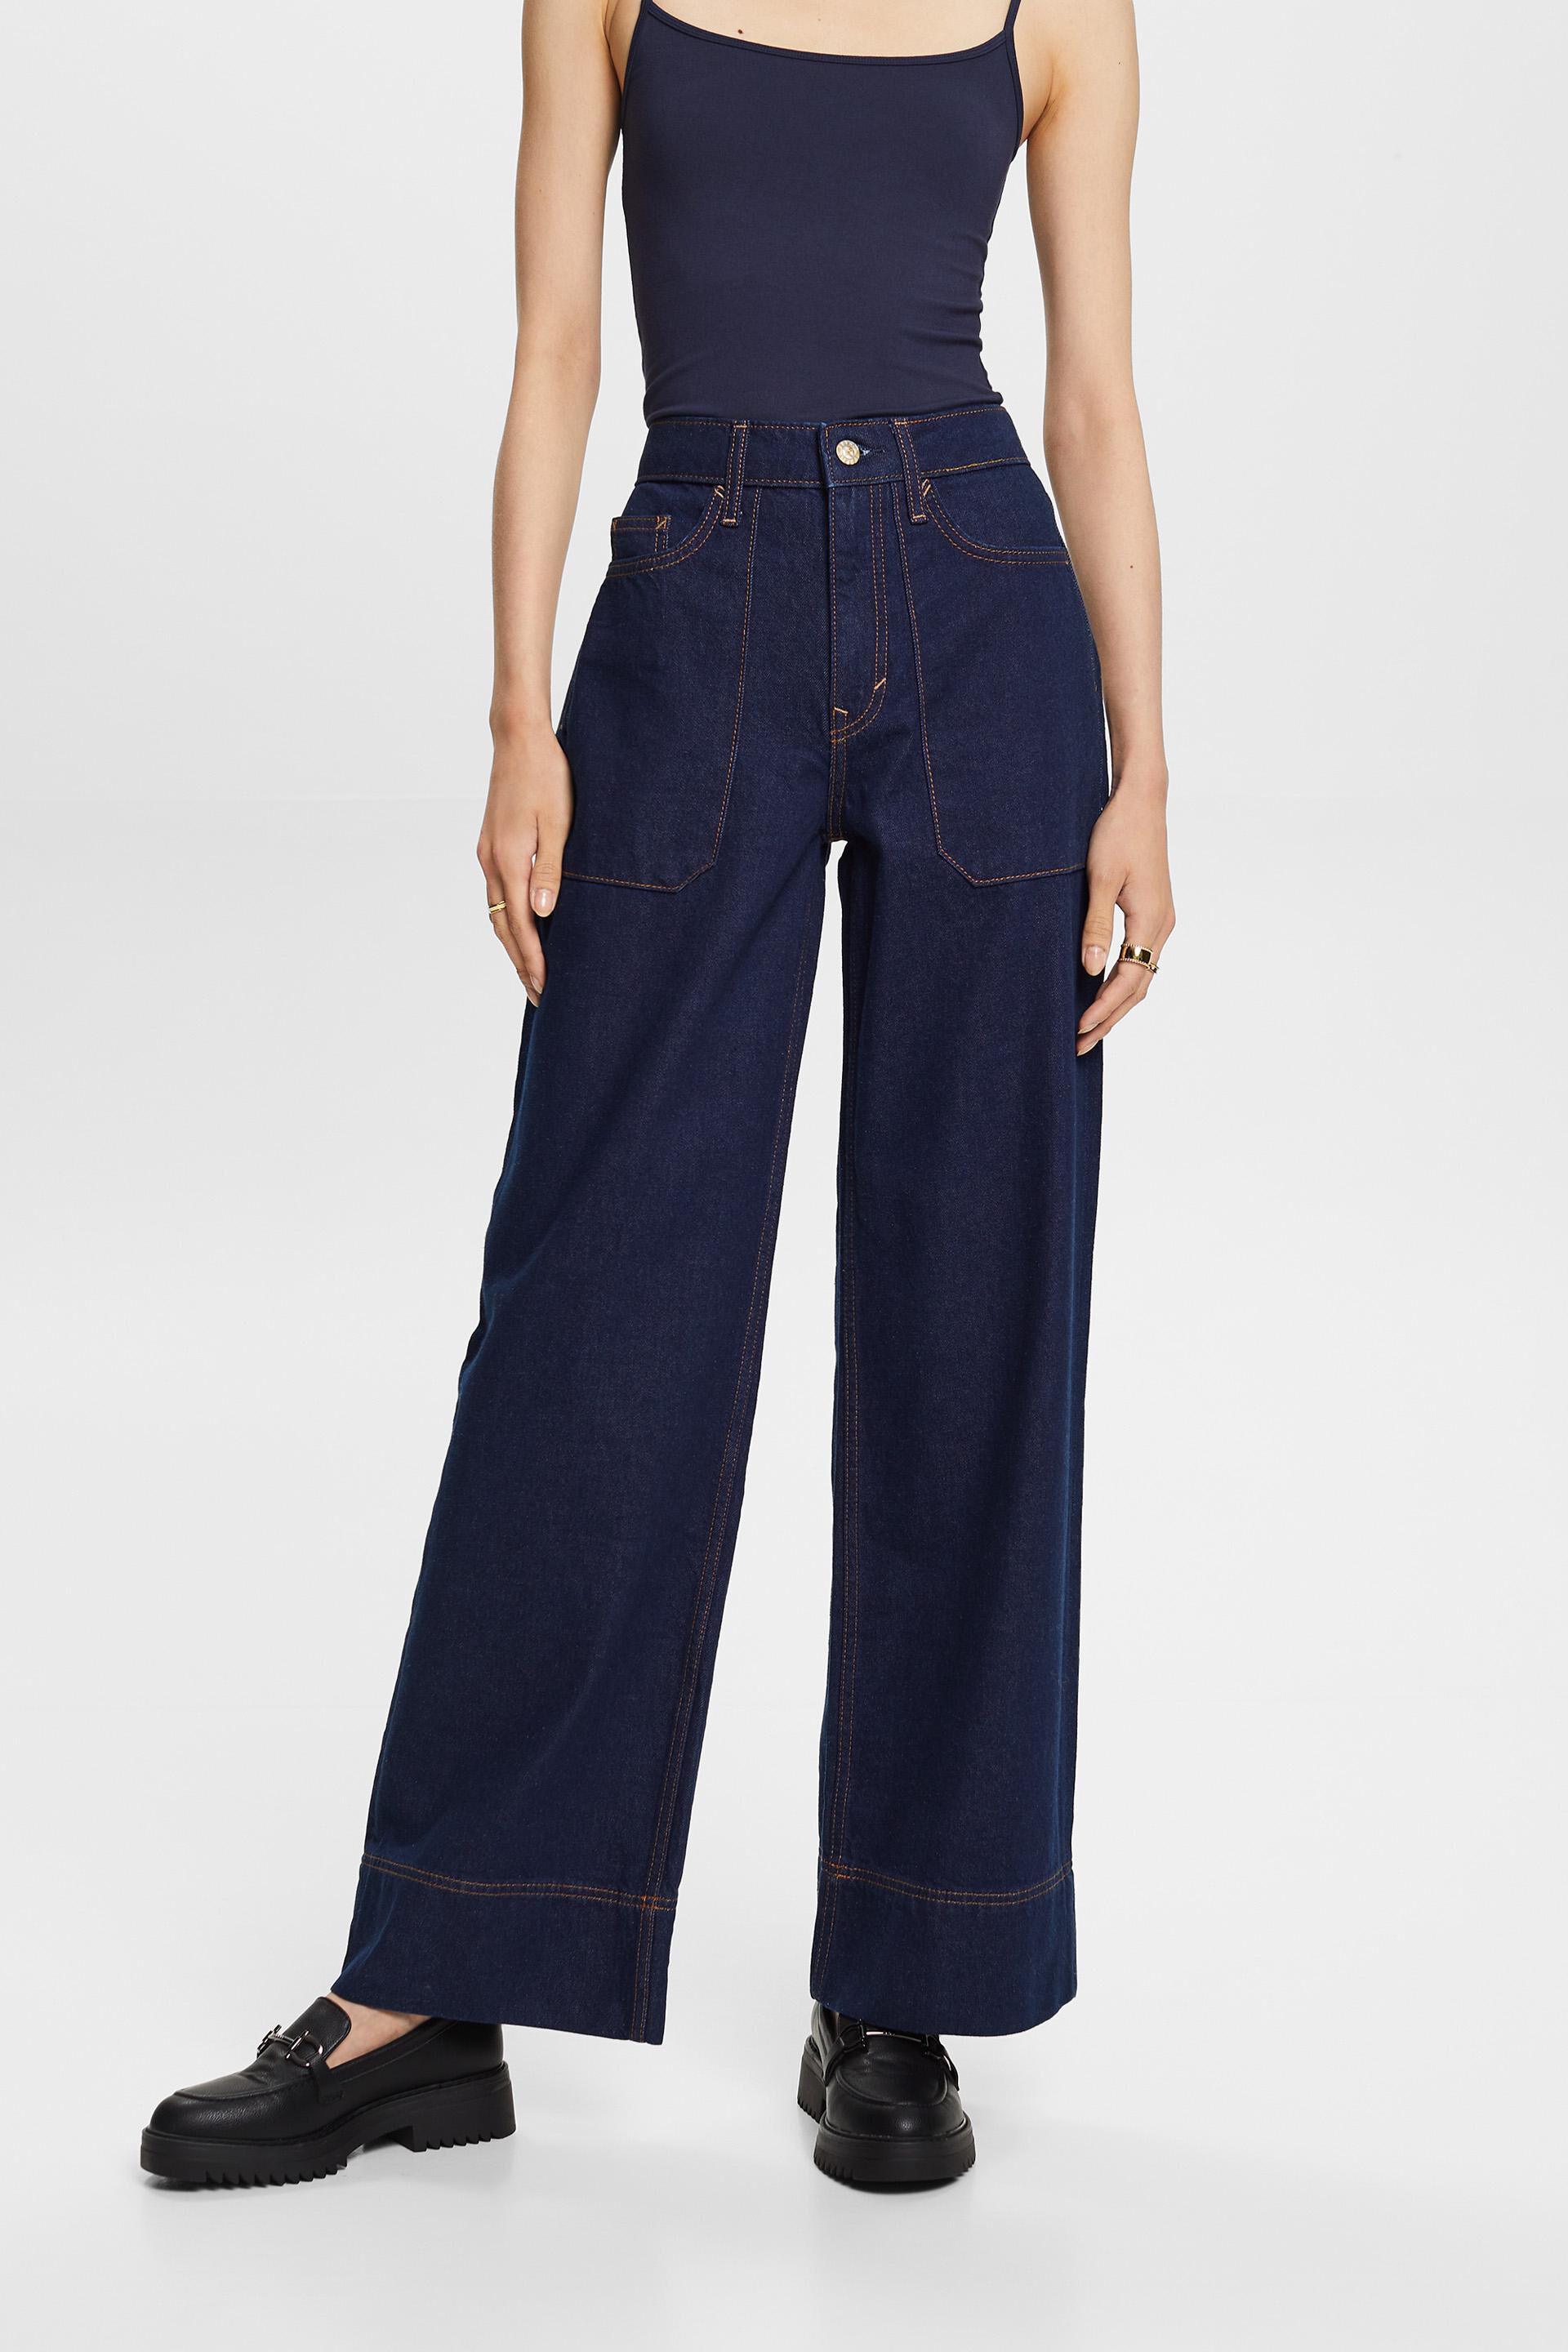 Esprit wide cotton 100% jeans, leg Retro